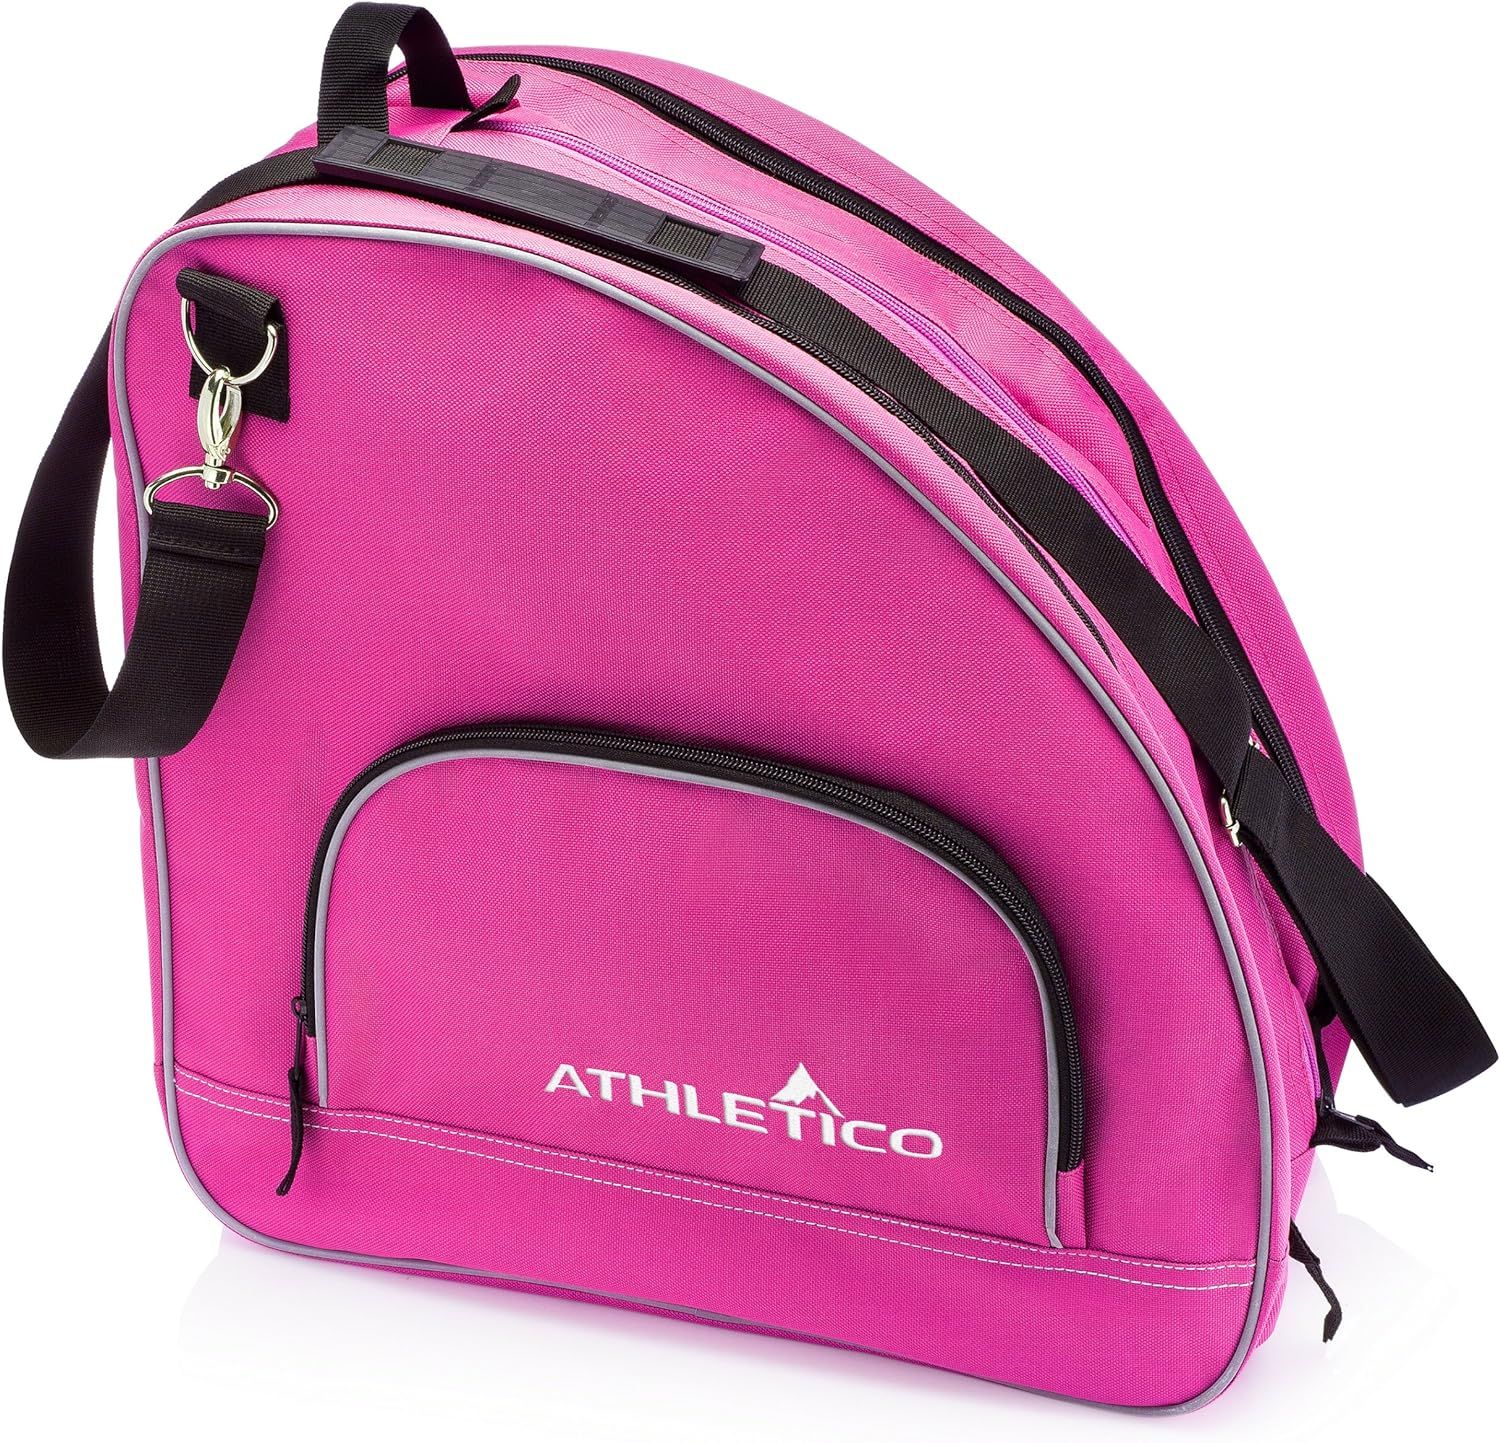 Athletico Ice & Inline Skate Bag - Premium Bag to Carry Ice Skates, Roller Skates, Inline Skates ... | Amazon (US)